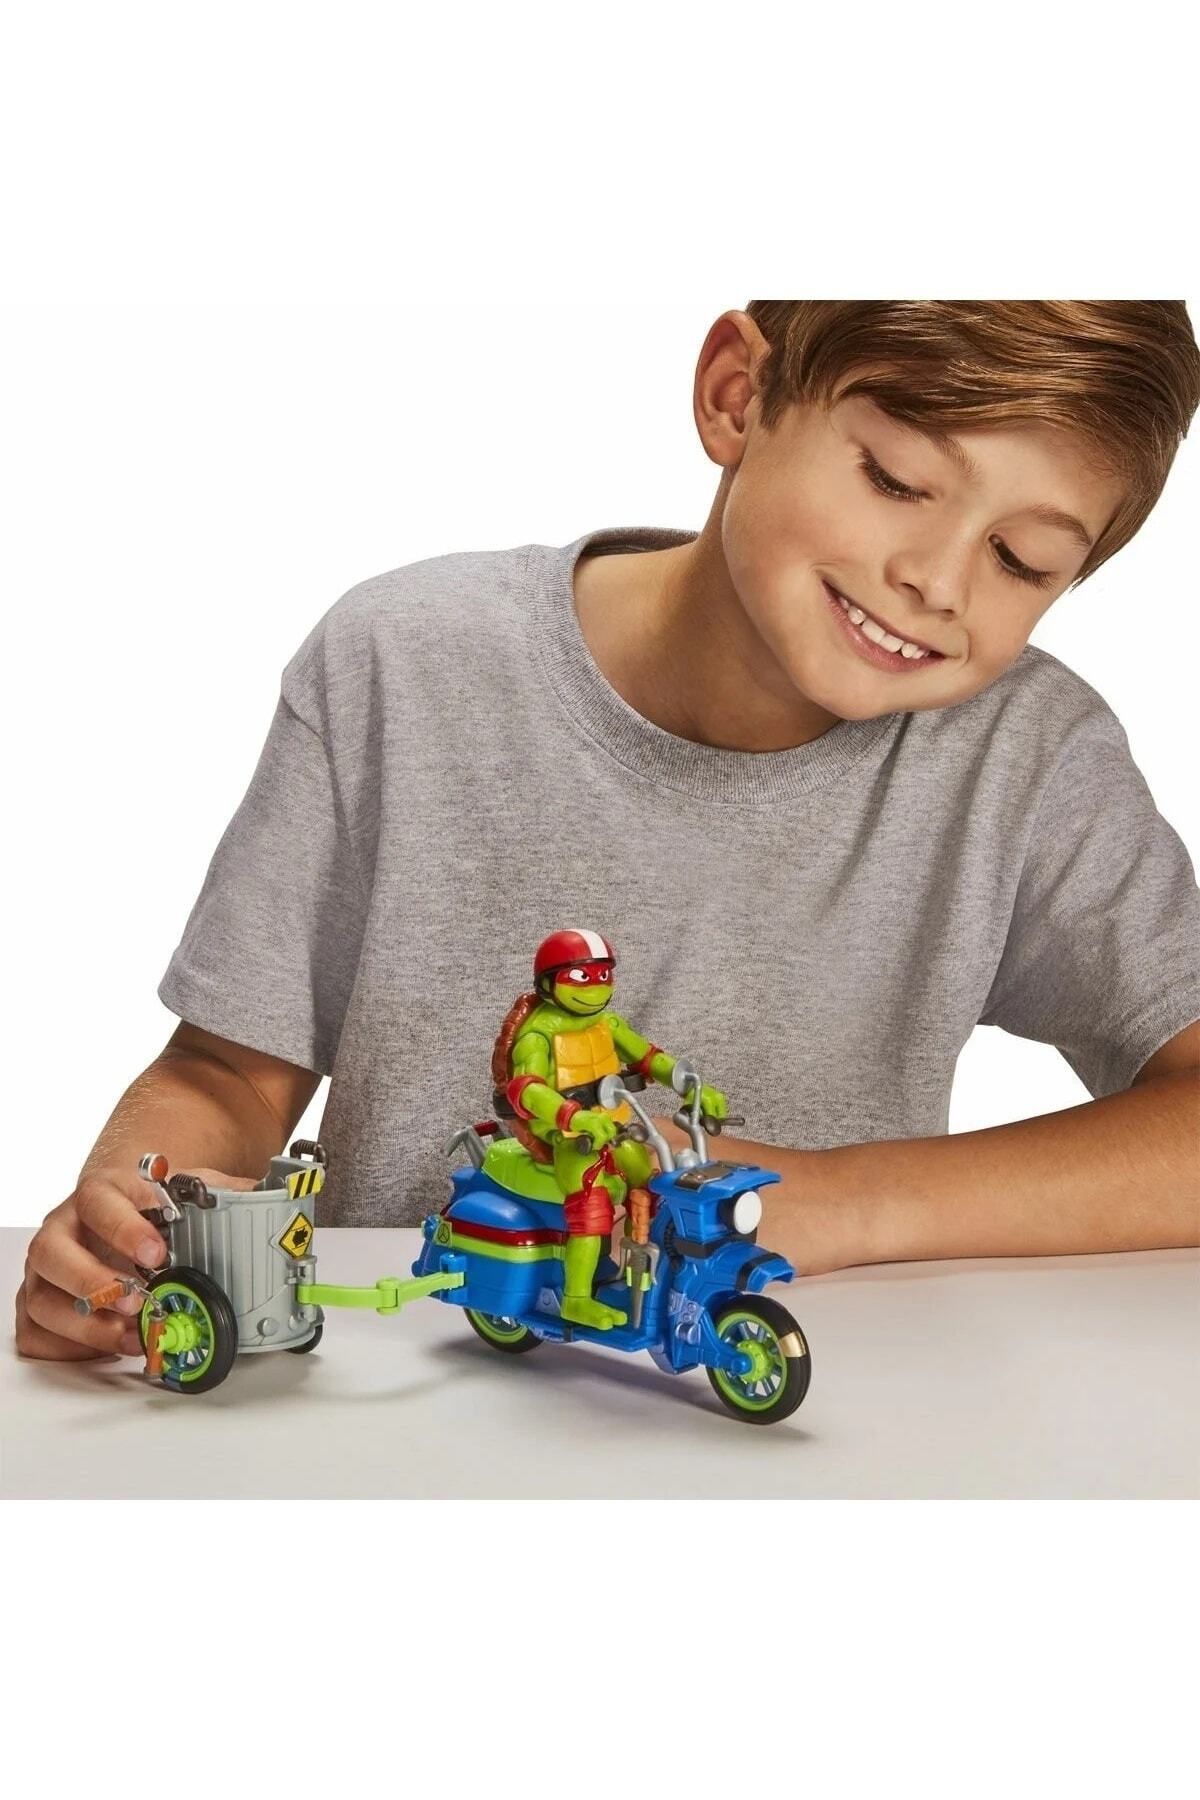 NECO TOYS Çocuk Yeni Eğlenceli Ninja Kaplumbağalar Araç ve Figür Oyun Seti Özel Koleksiyon